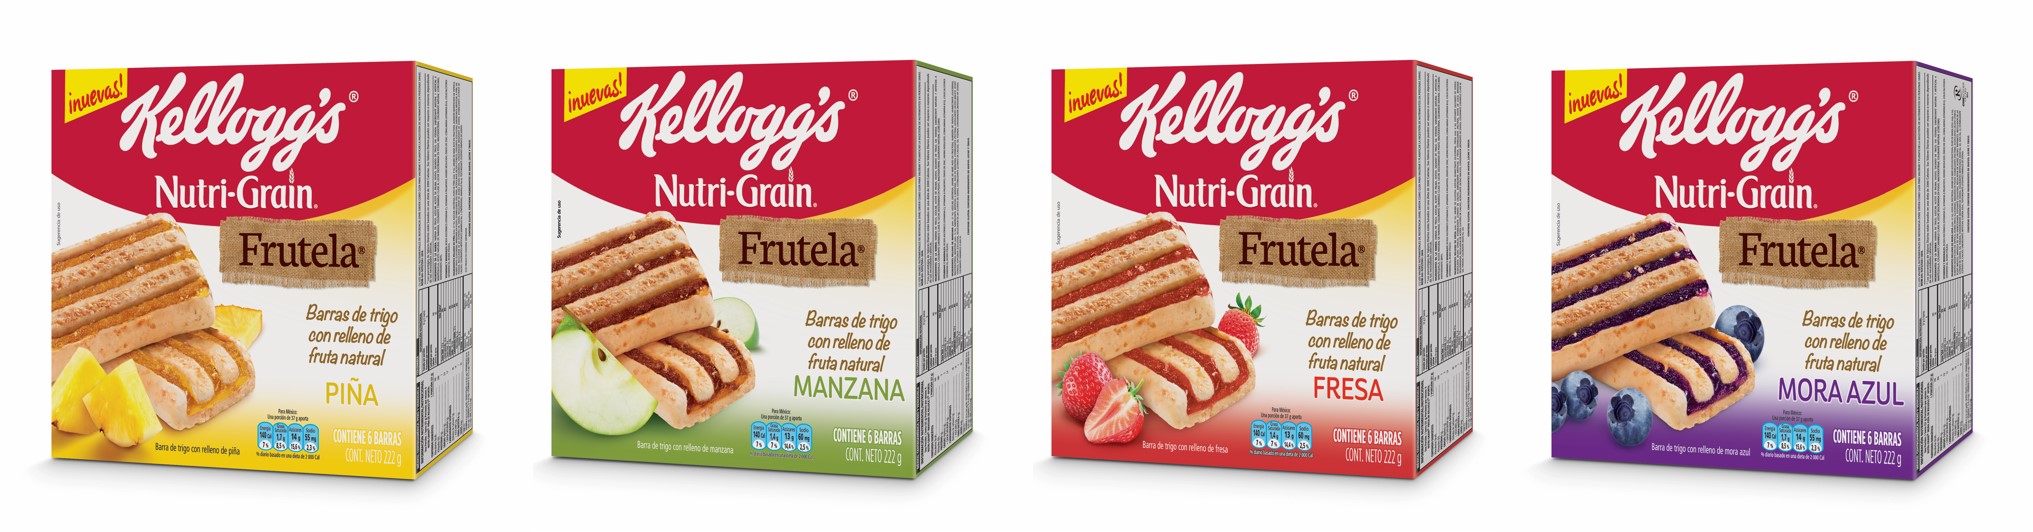 Kellogg's Frutela